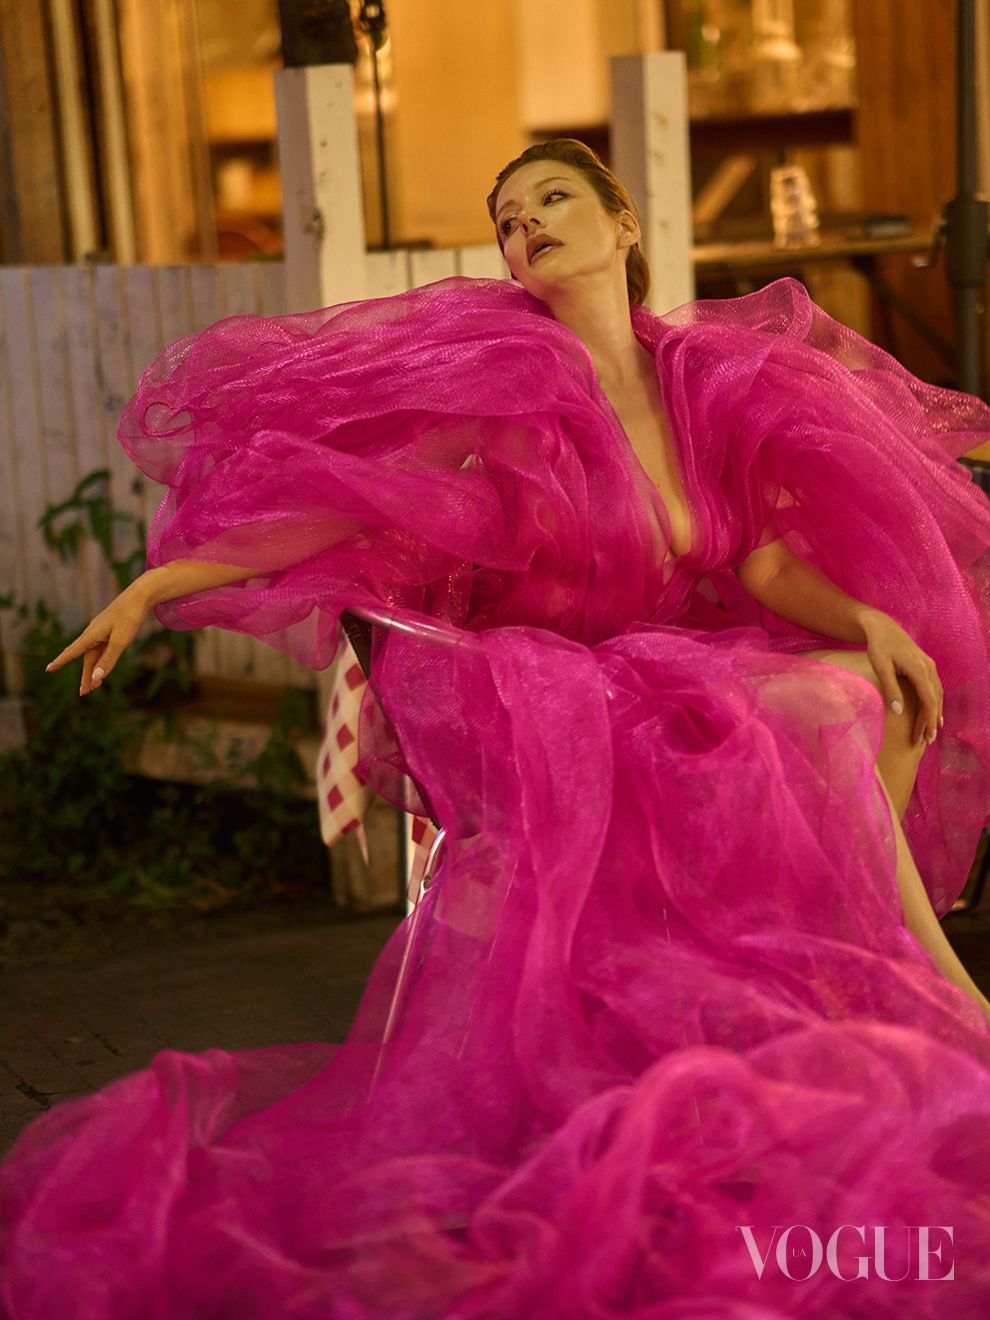 “Вот это формы“: Тина Кароль в прозрачных платьях от украинского бренда снялась на улицах Токио